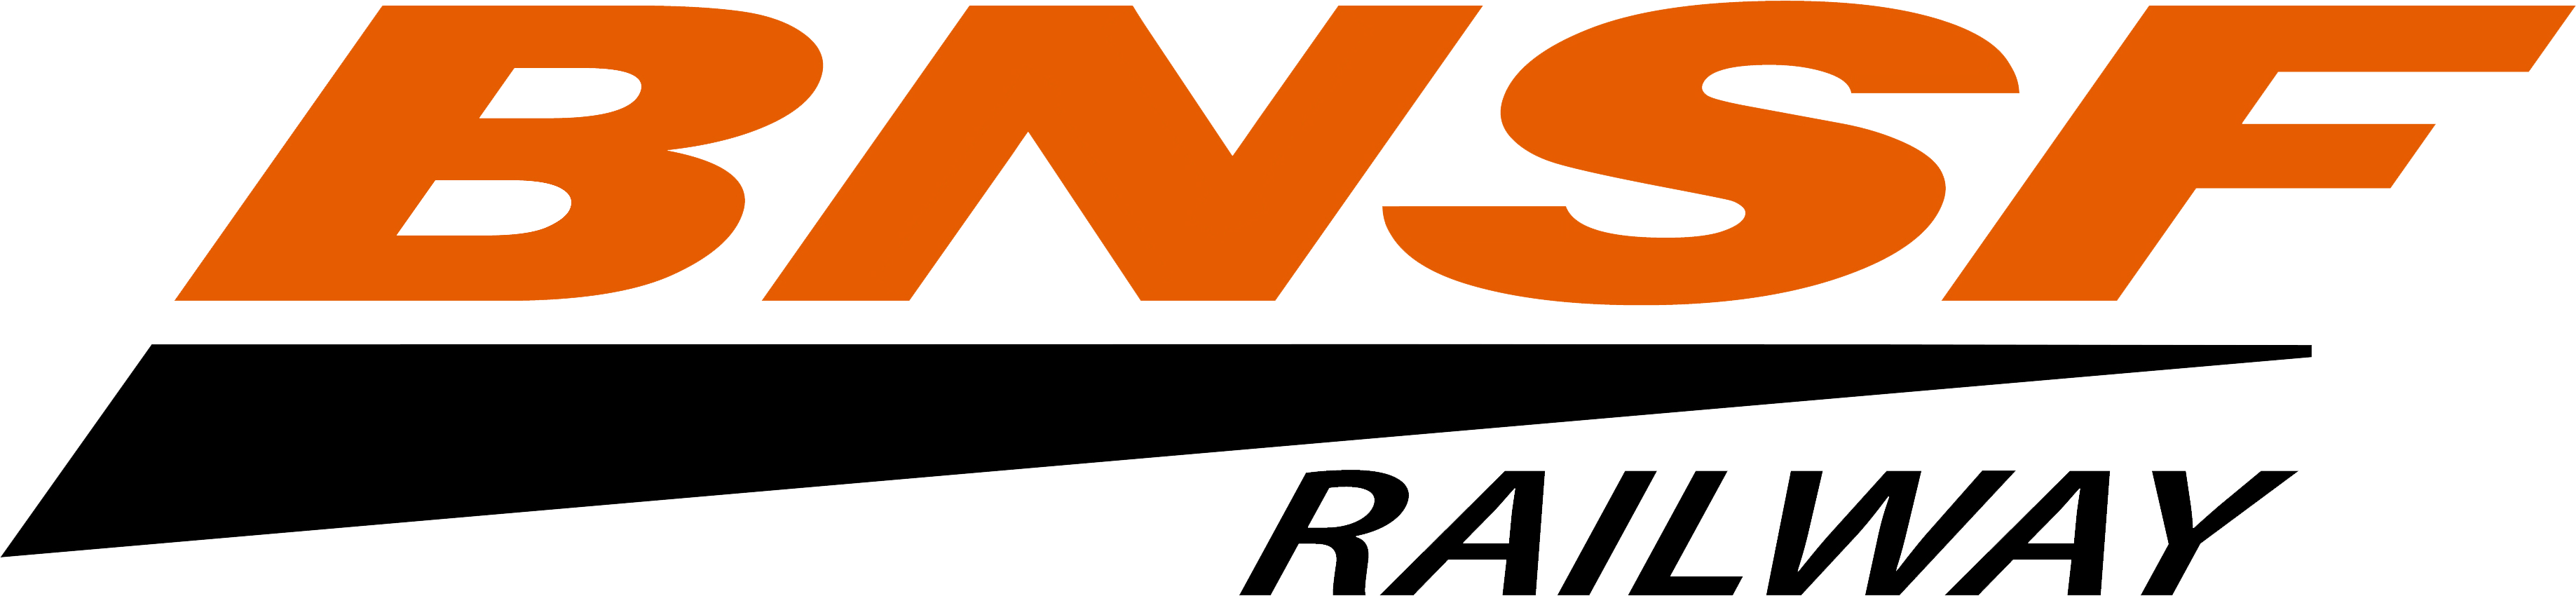 BNSF_Railway_logo